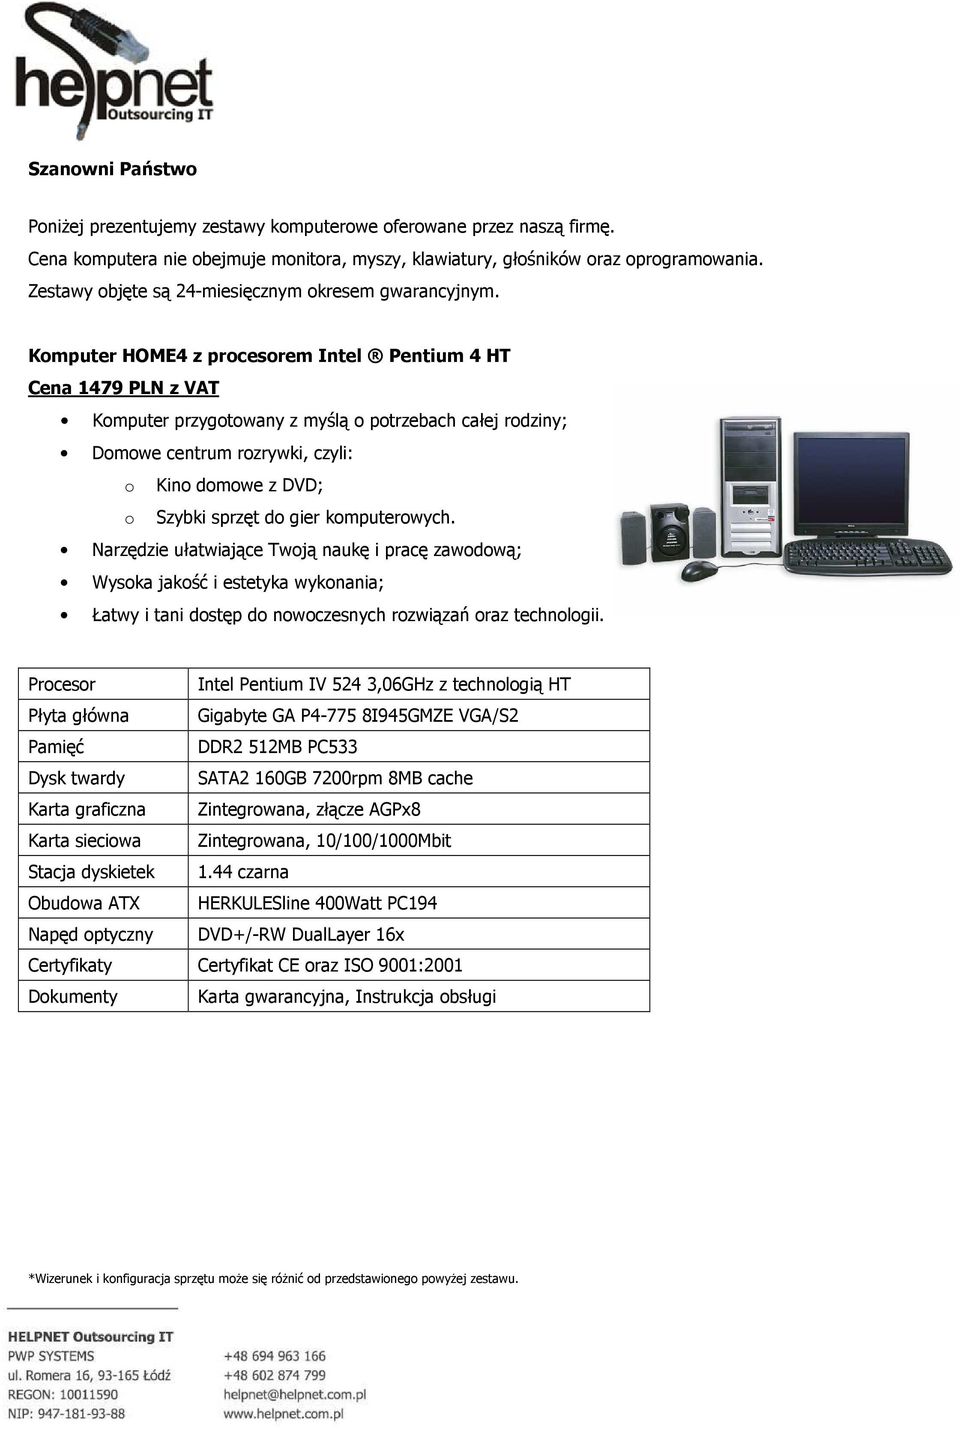 Komputer HOME4 z procesorem Intel Pentium 4 HT Cena 1479 PLN z VAT Komputer przygotowany z myślą o potrzebach całej rodziny; Domowe centrum rozrywki, czyli: o Kino domowe z DVD; o Szybki sprzęt do